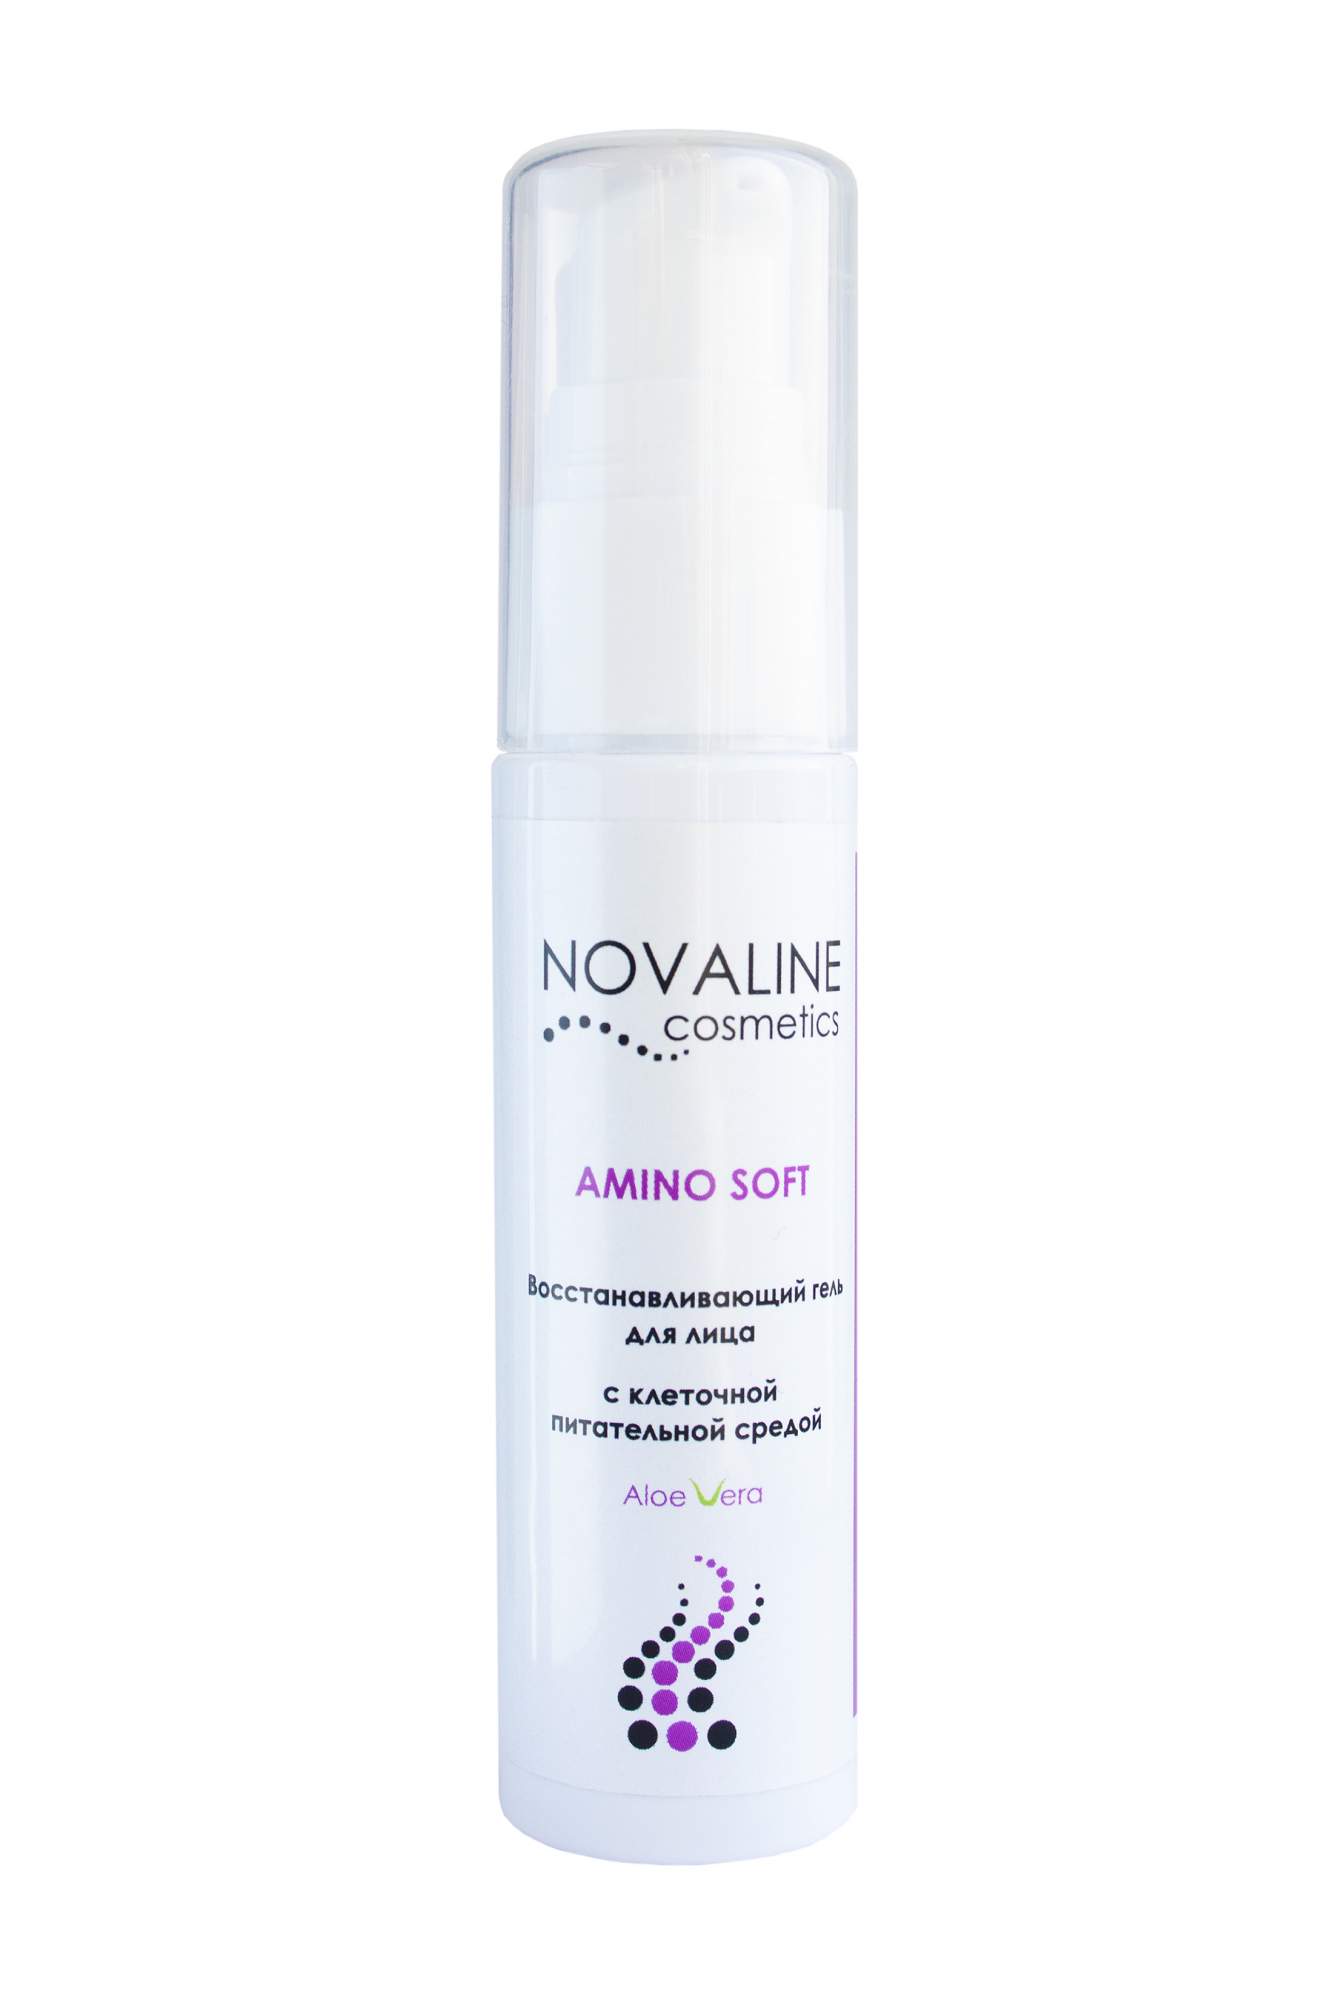 Novaline. Аминокислоты в косметике. Amino Soft восстанавливающим гелем. Аминокислоты для лица красный пилинг. Новалин.